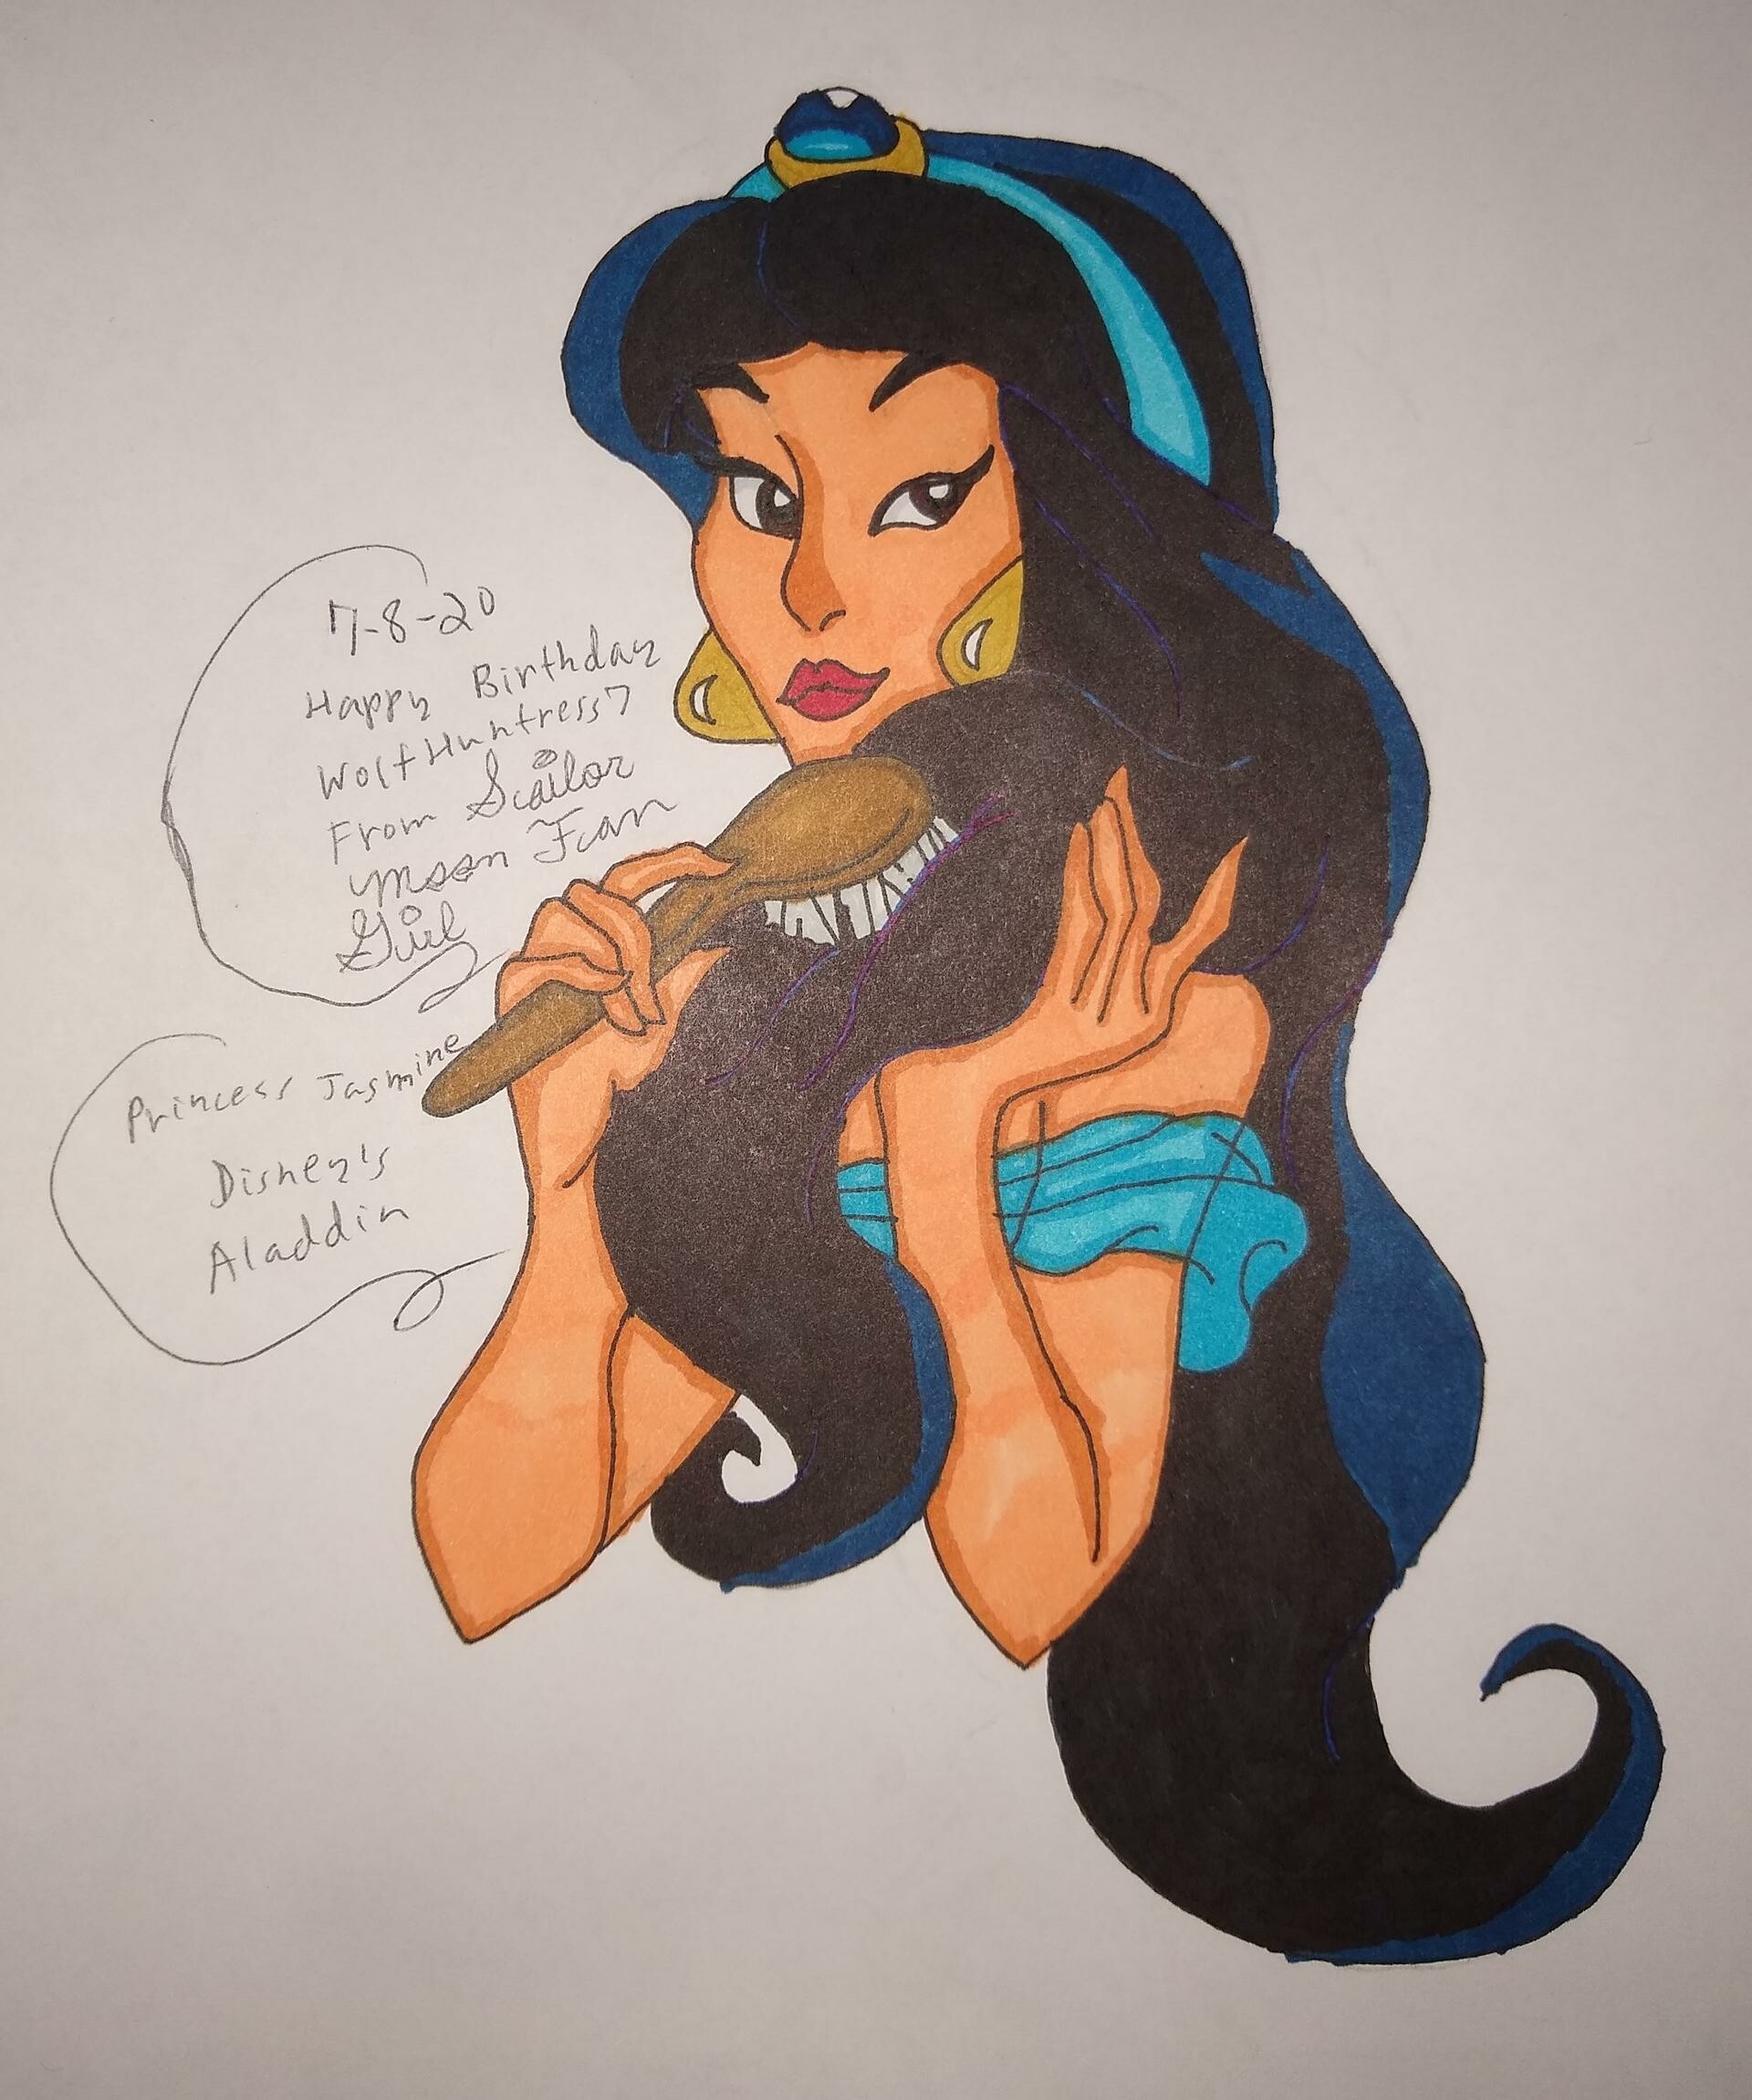 ArtStation - Disney's Aladdin Princess Jasmine